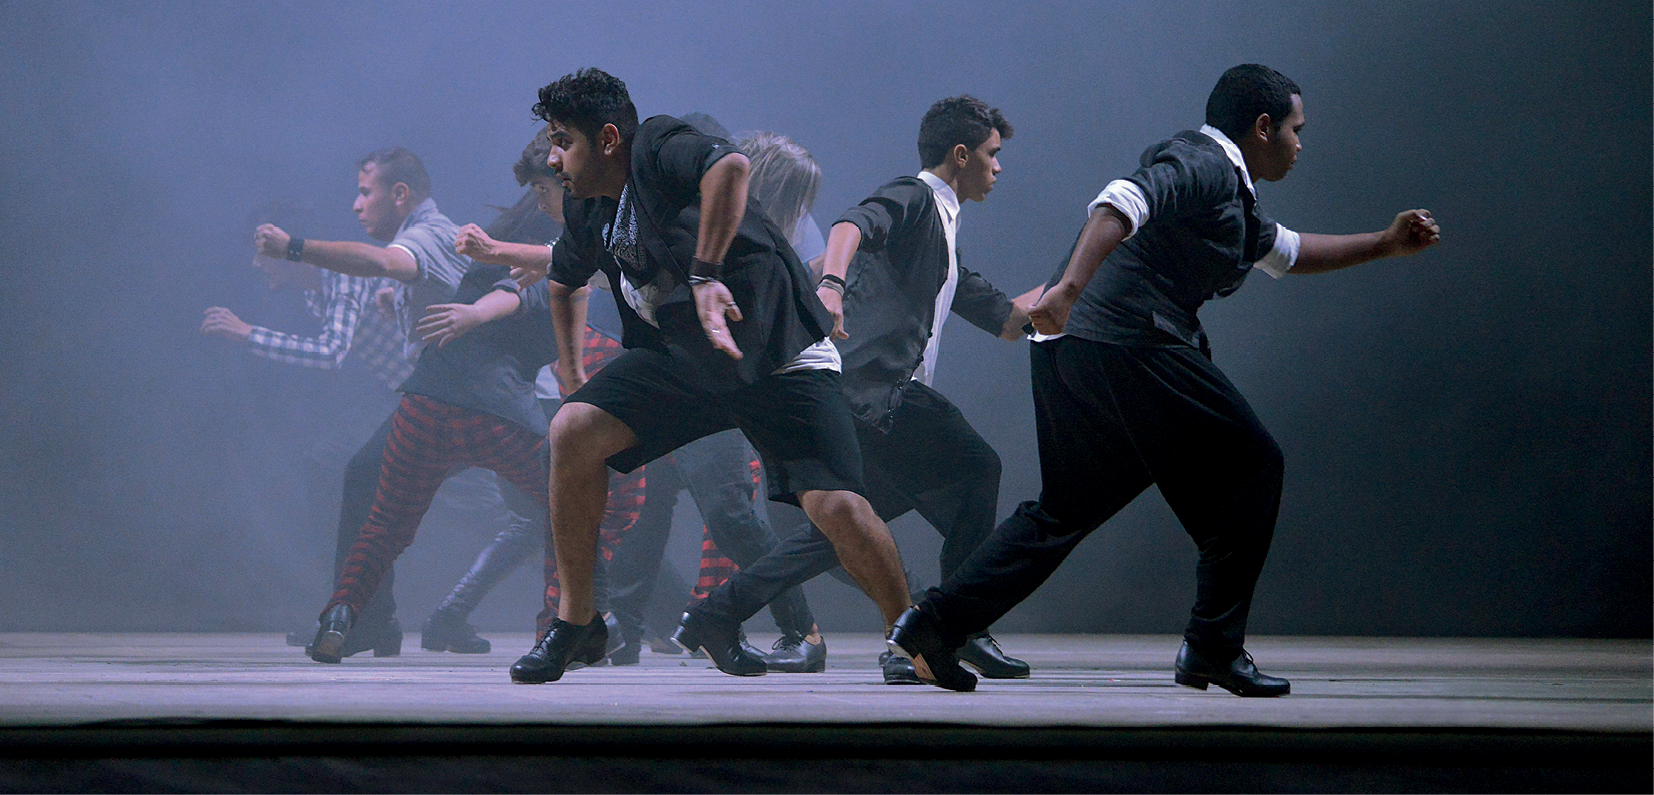 Fotografia. Homens dançam em um palco com fundo enevoado, voltados para lados opostos. Alguns vestem jaqueta, camisa e calça pretas. Um deles veste bermuda preta.